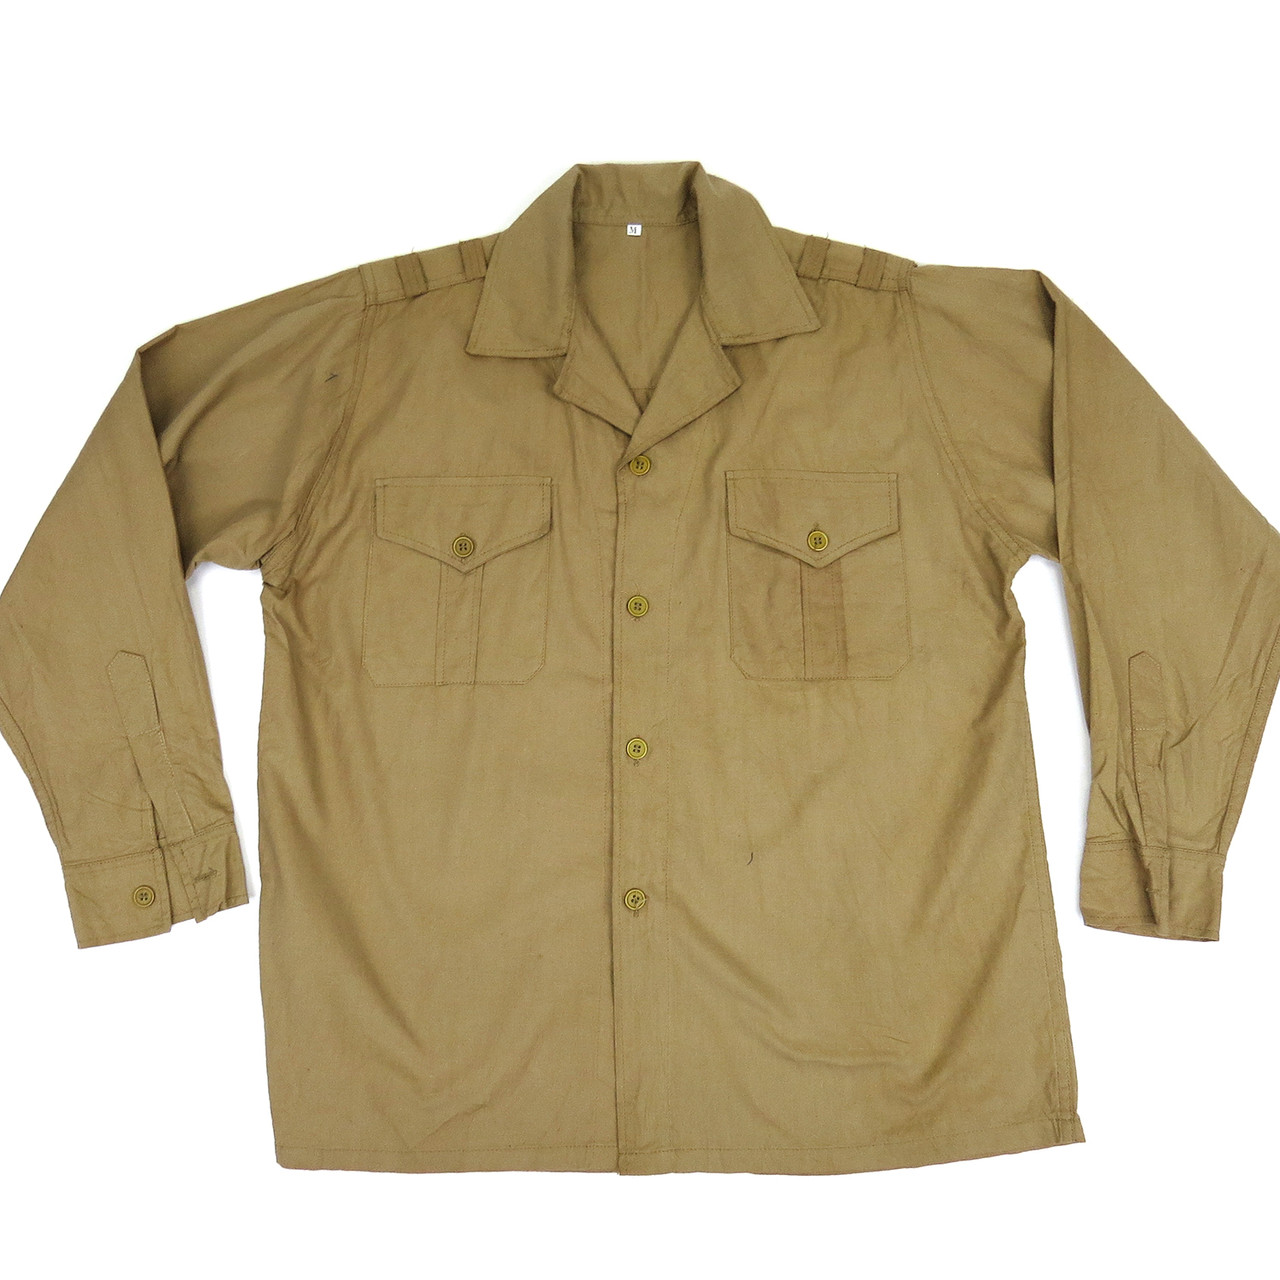 Viet Cong Main Force Khaki Uniform